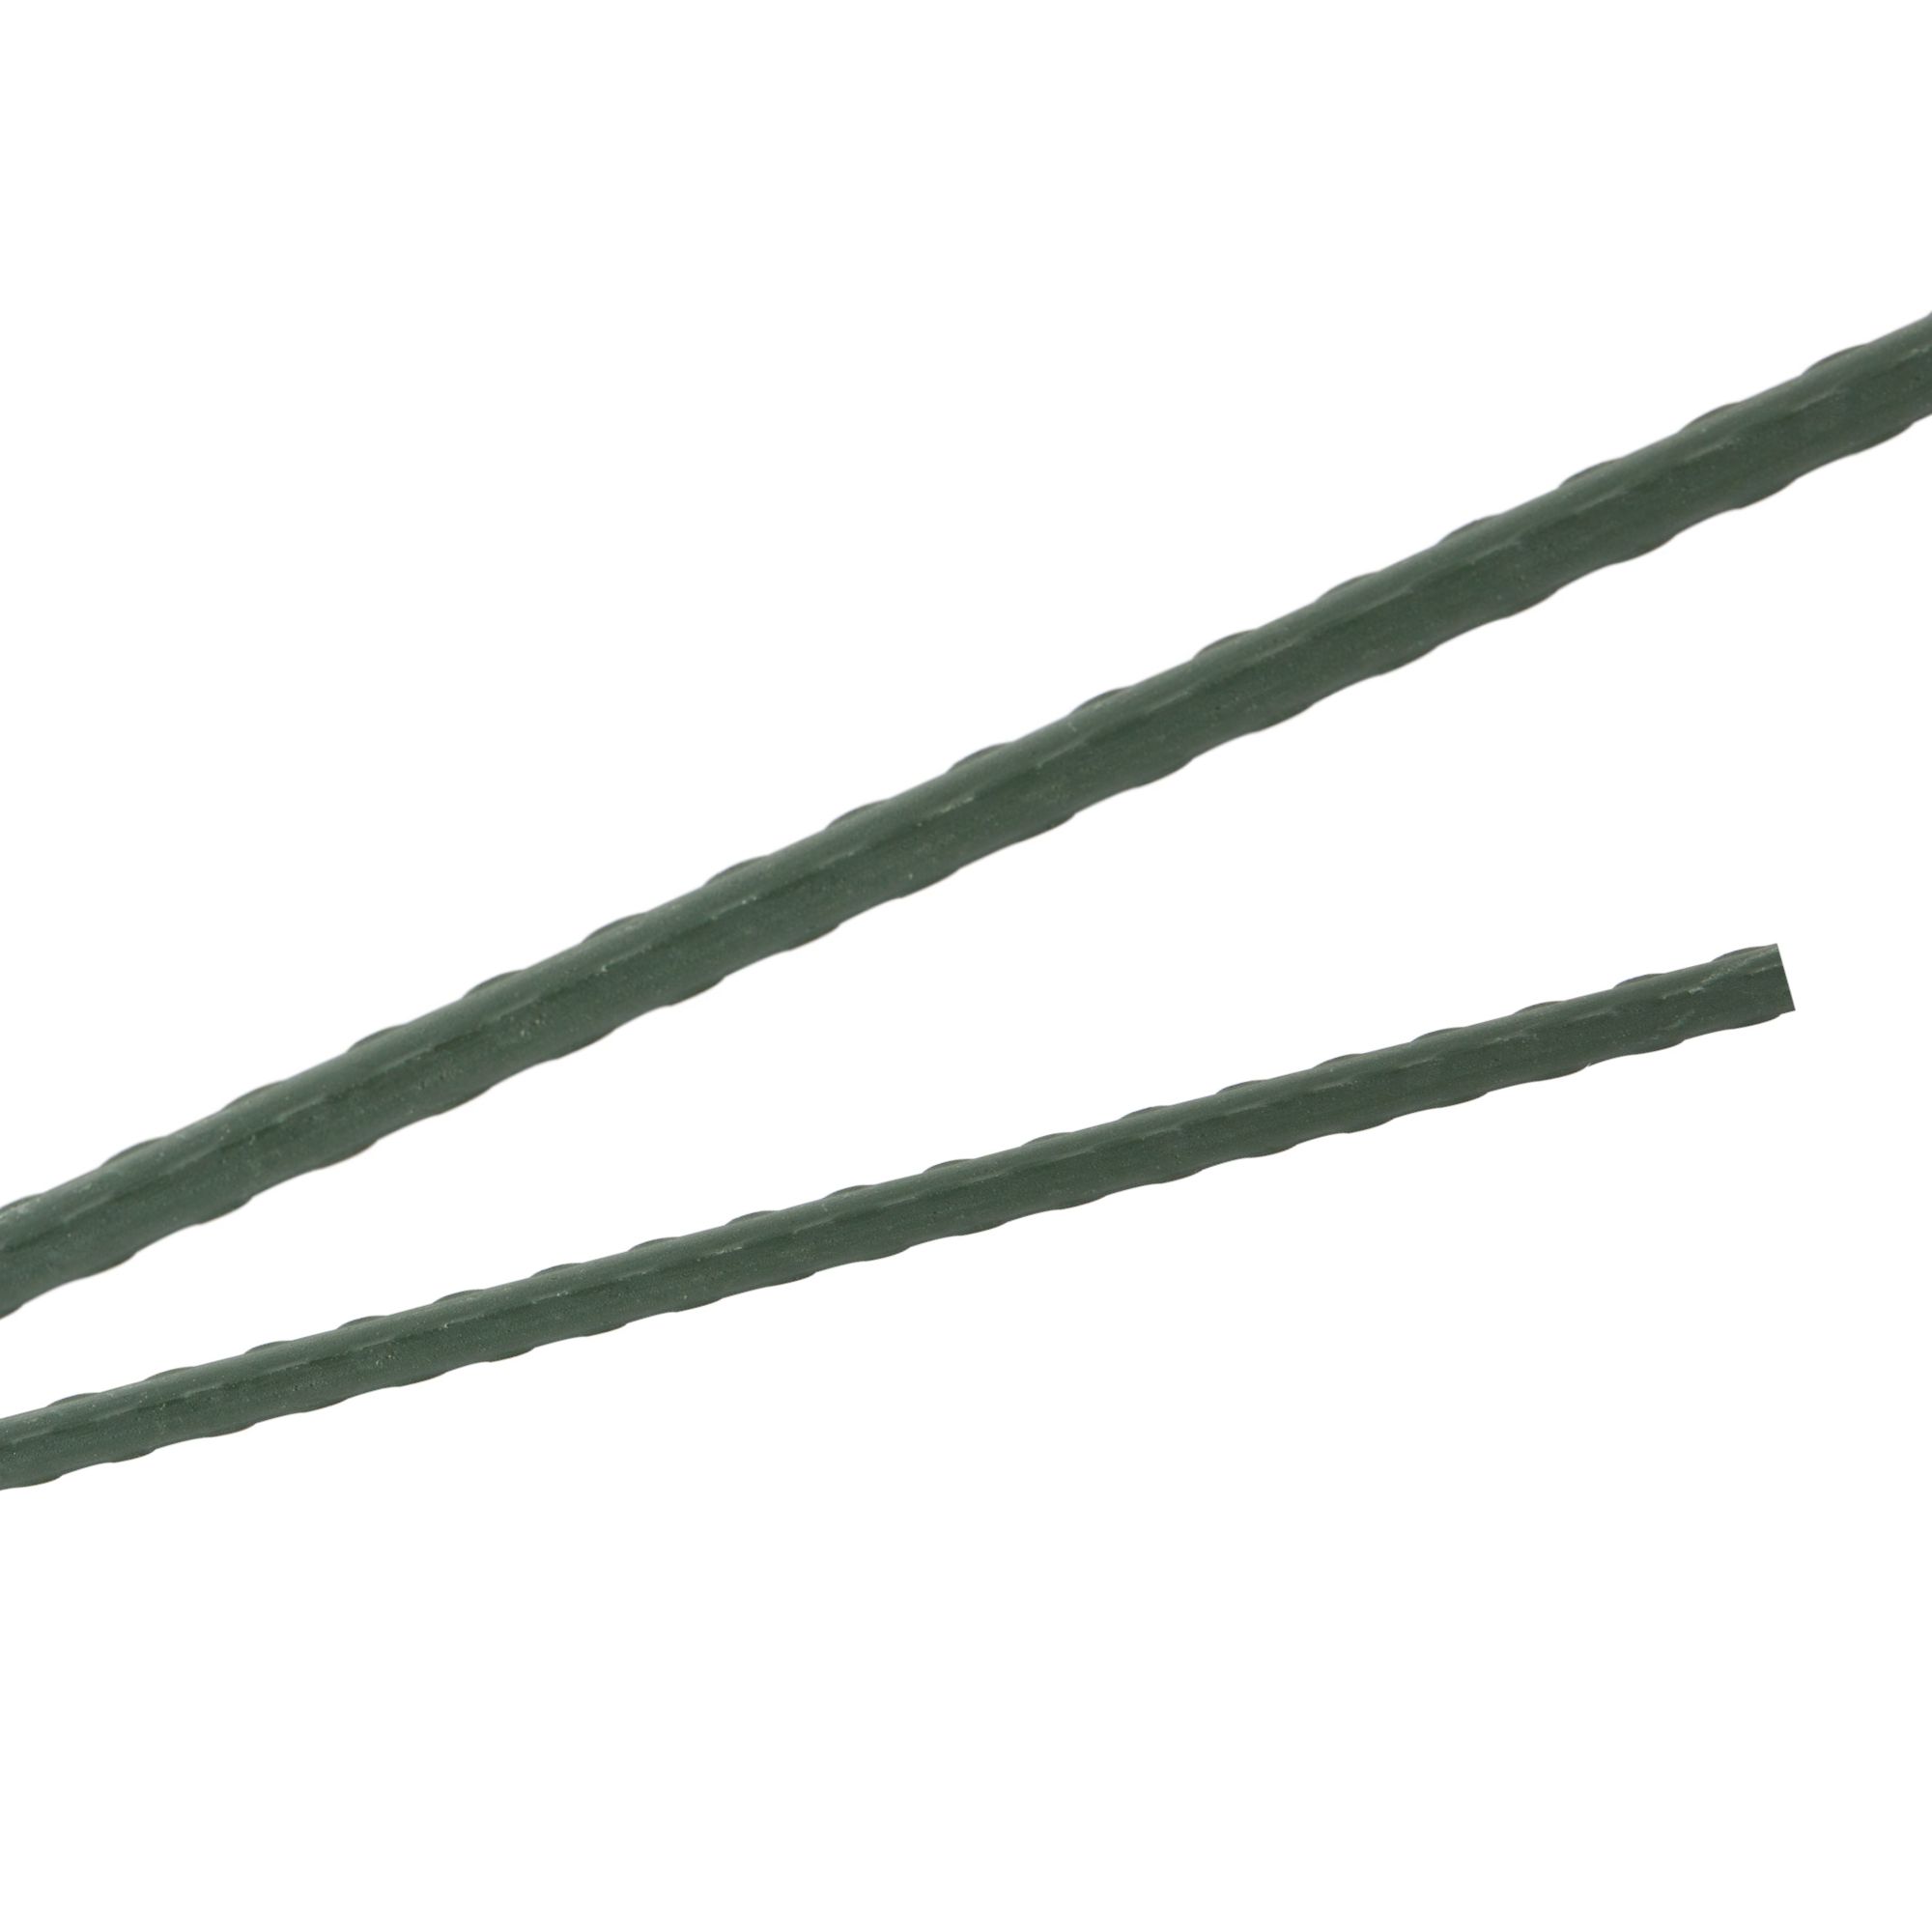 Tyč podpěrná, 16mm, 150cm, kov+PVC, zelená 0.212000 Kg GIGA Sklad20 32014 5